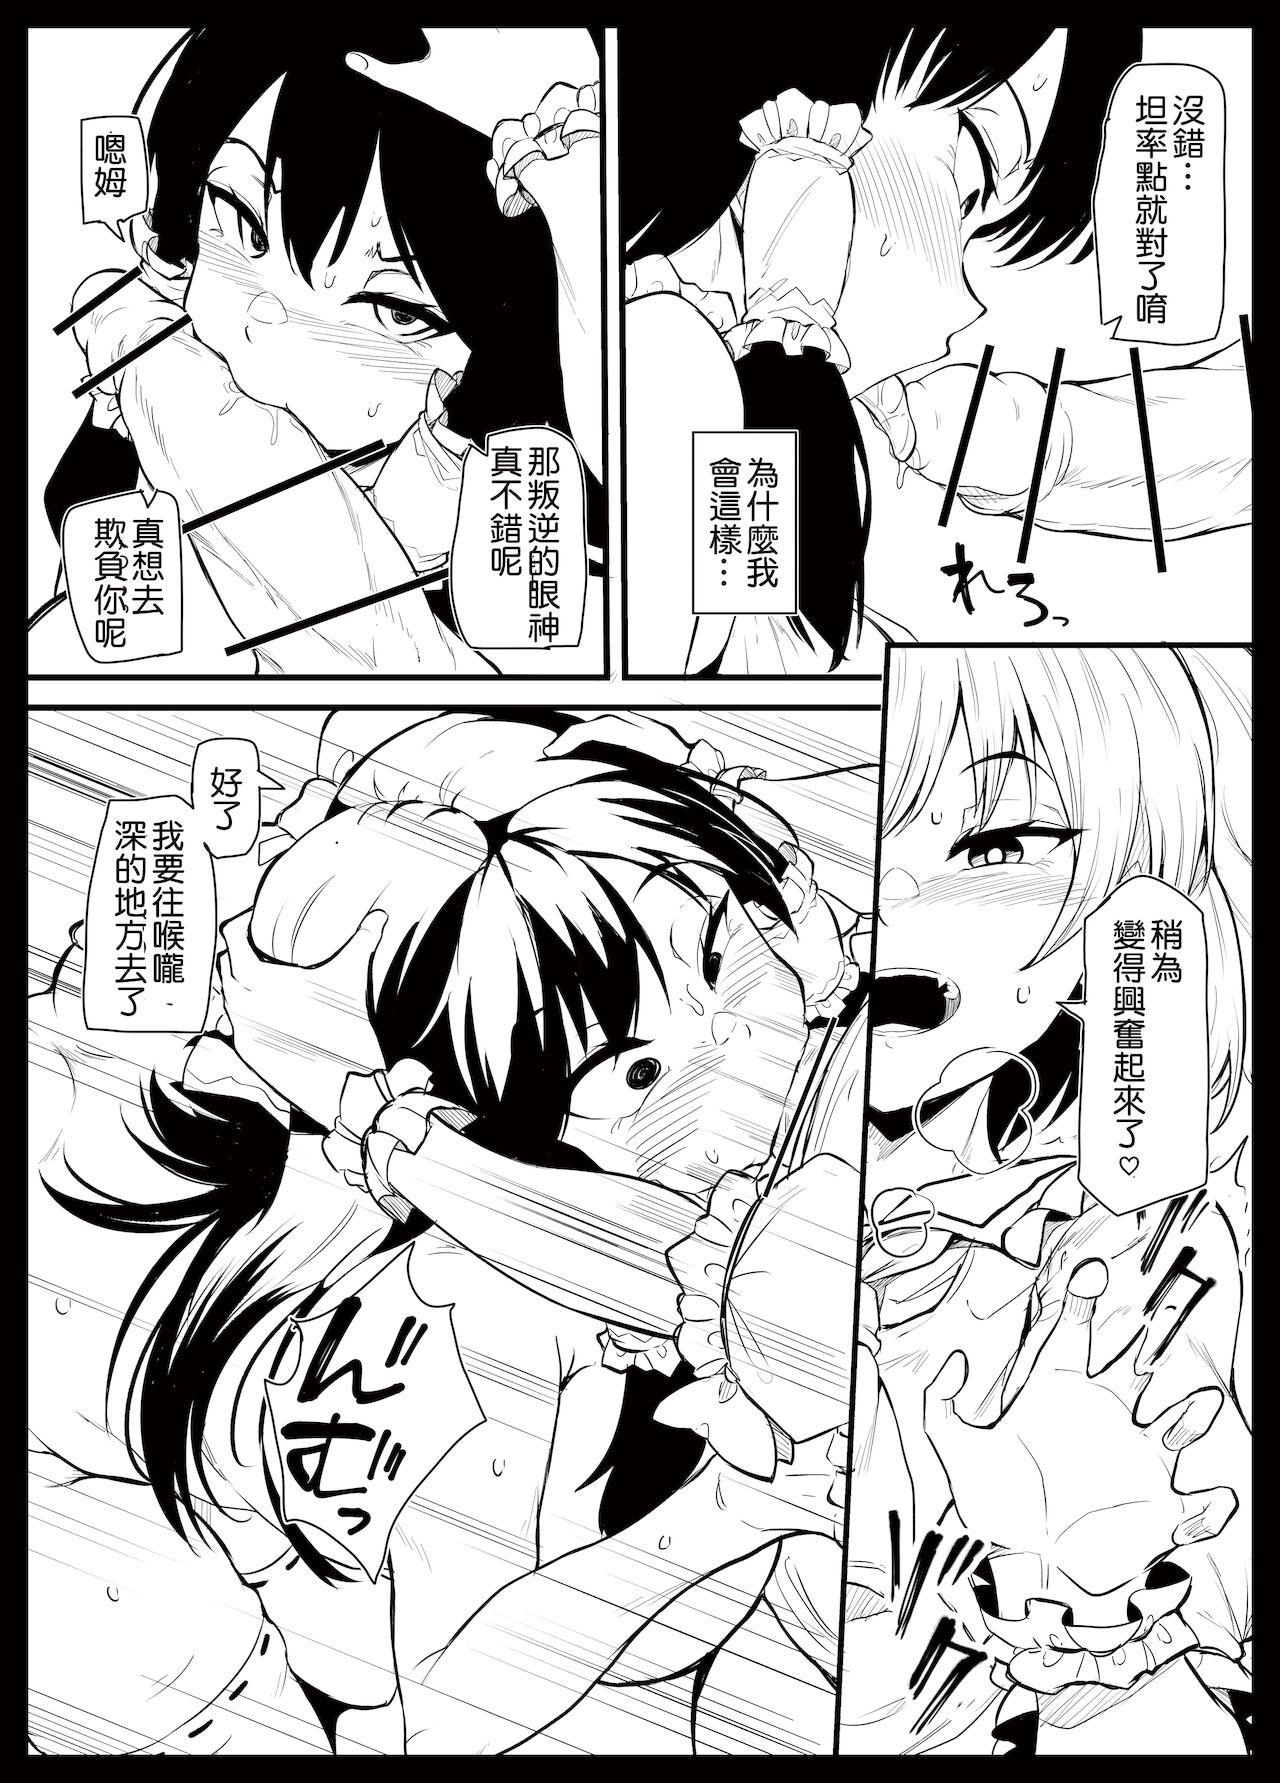 Futanari furan-chan ga reimu o chokyo suru manga 9